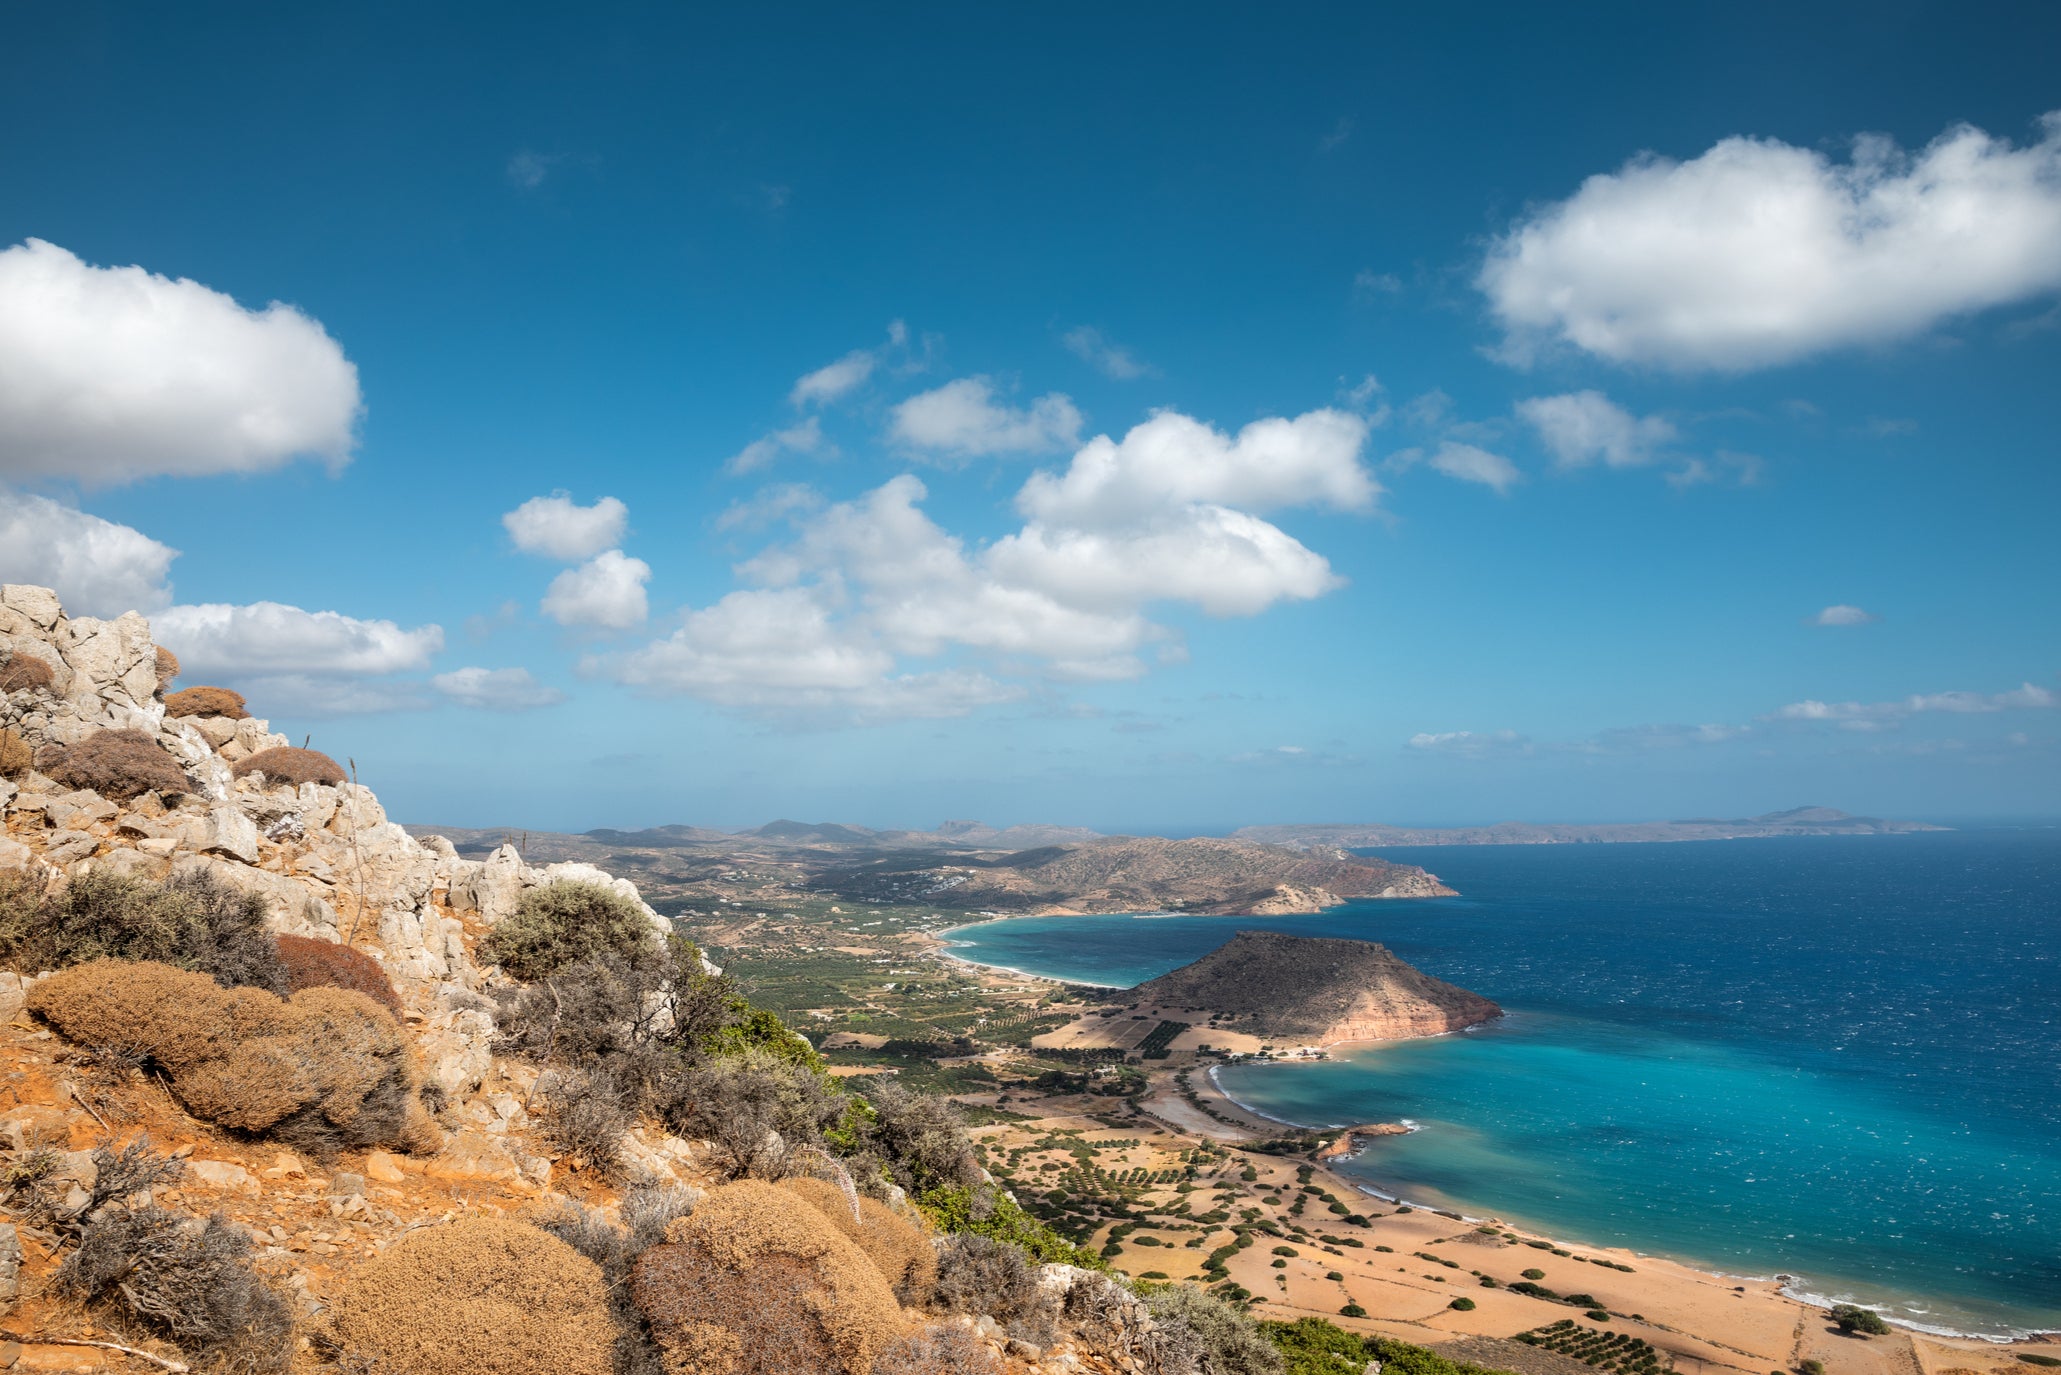 Follow Crete’s coastline or head high into the hills